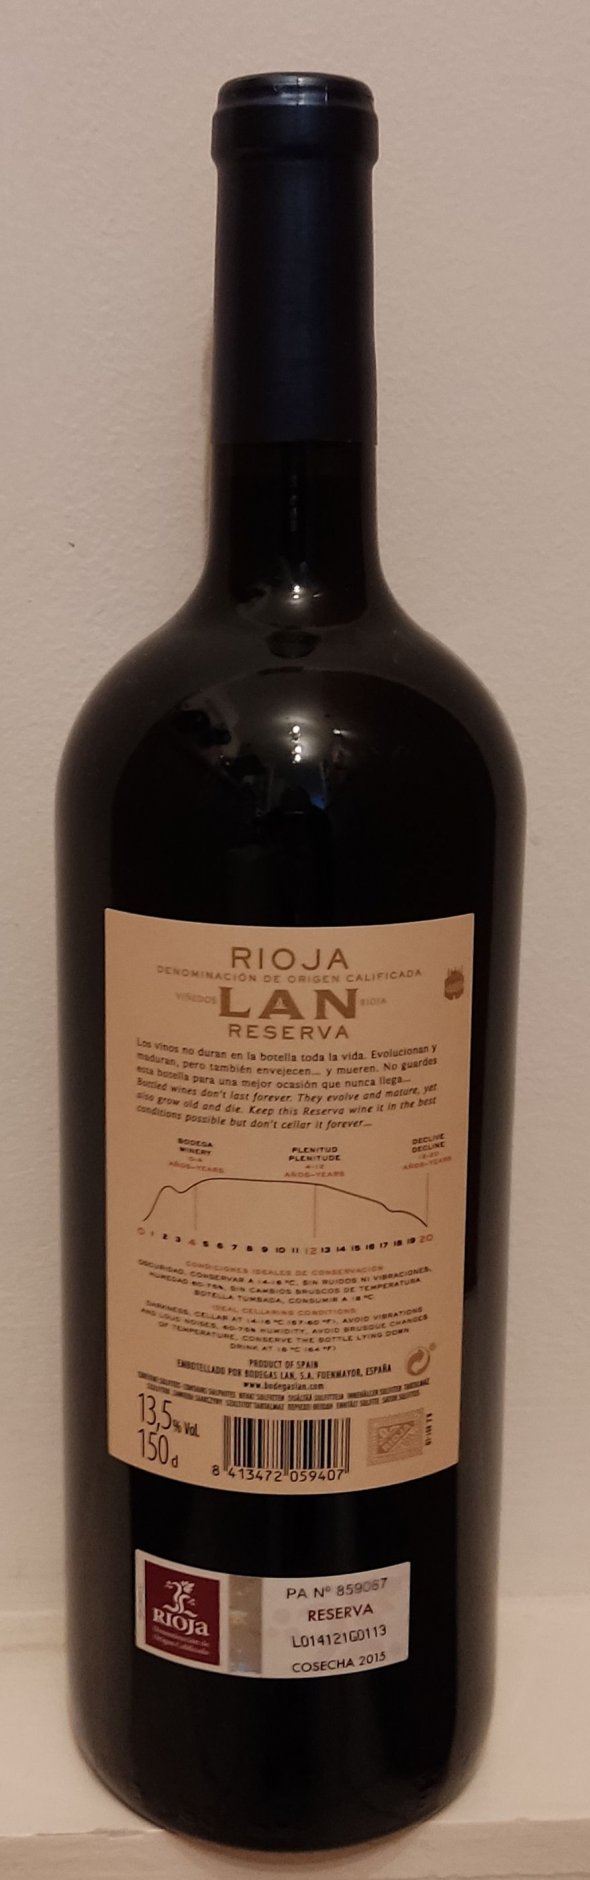 LAN, Reserva, Rioja